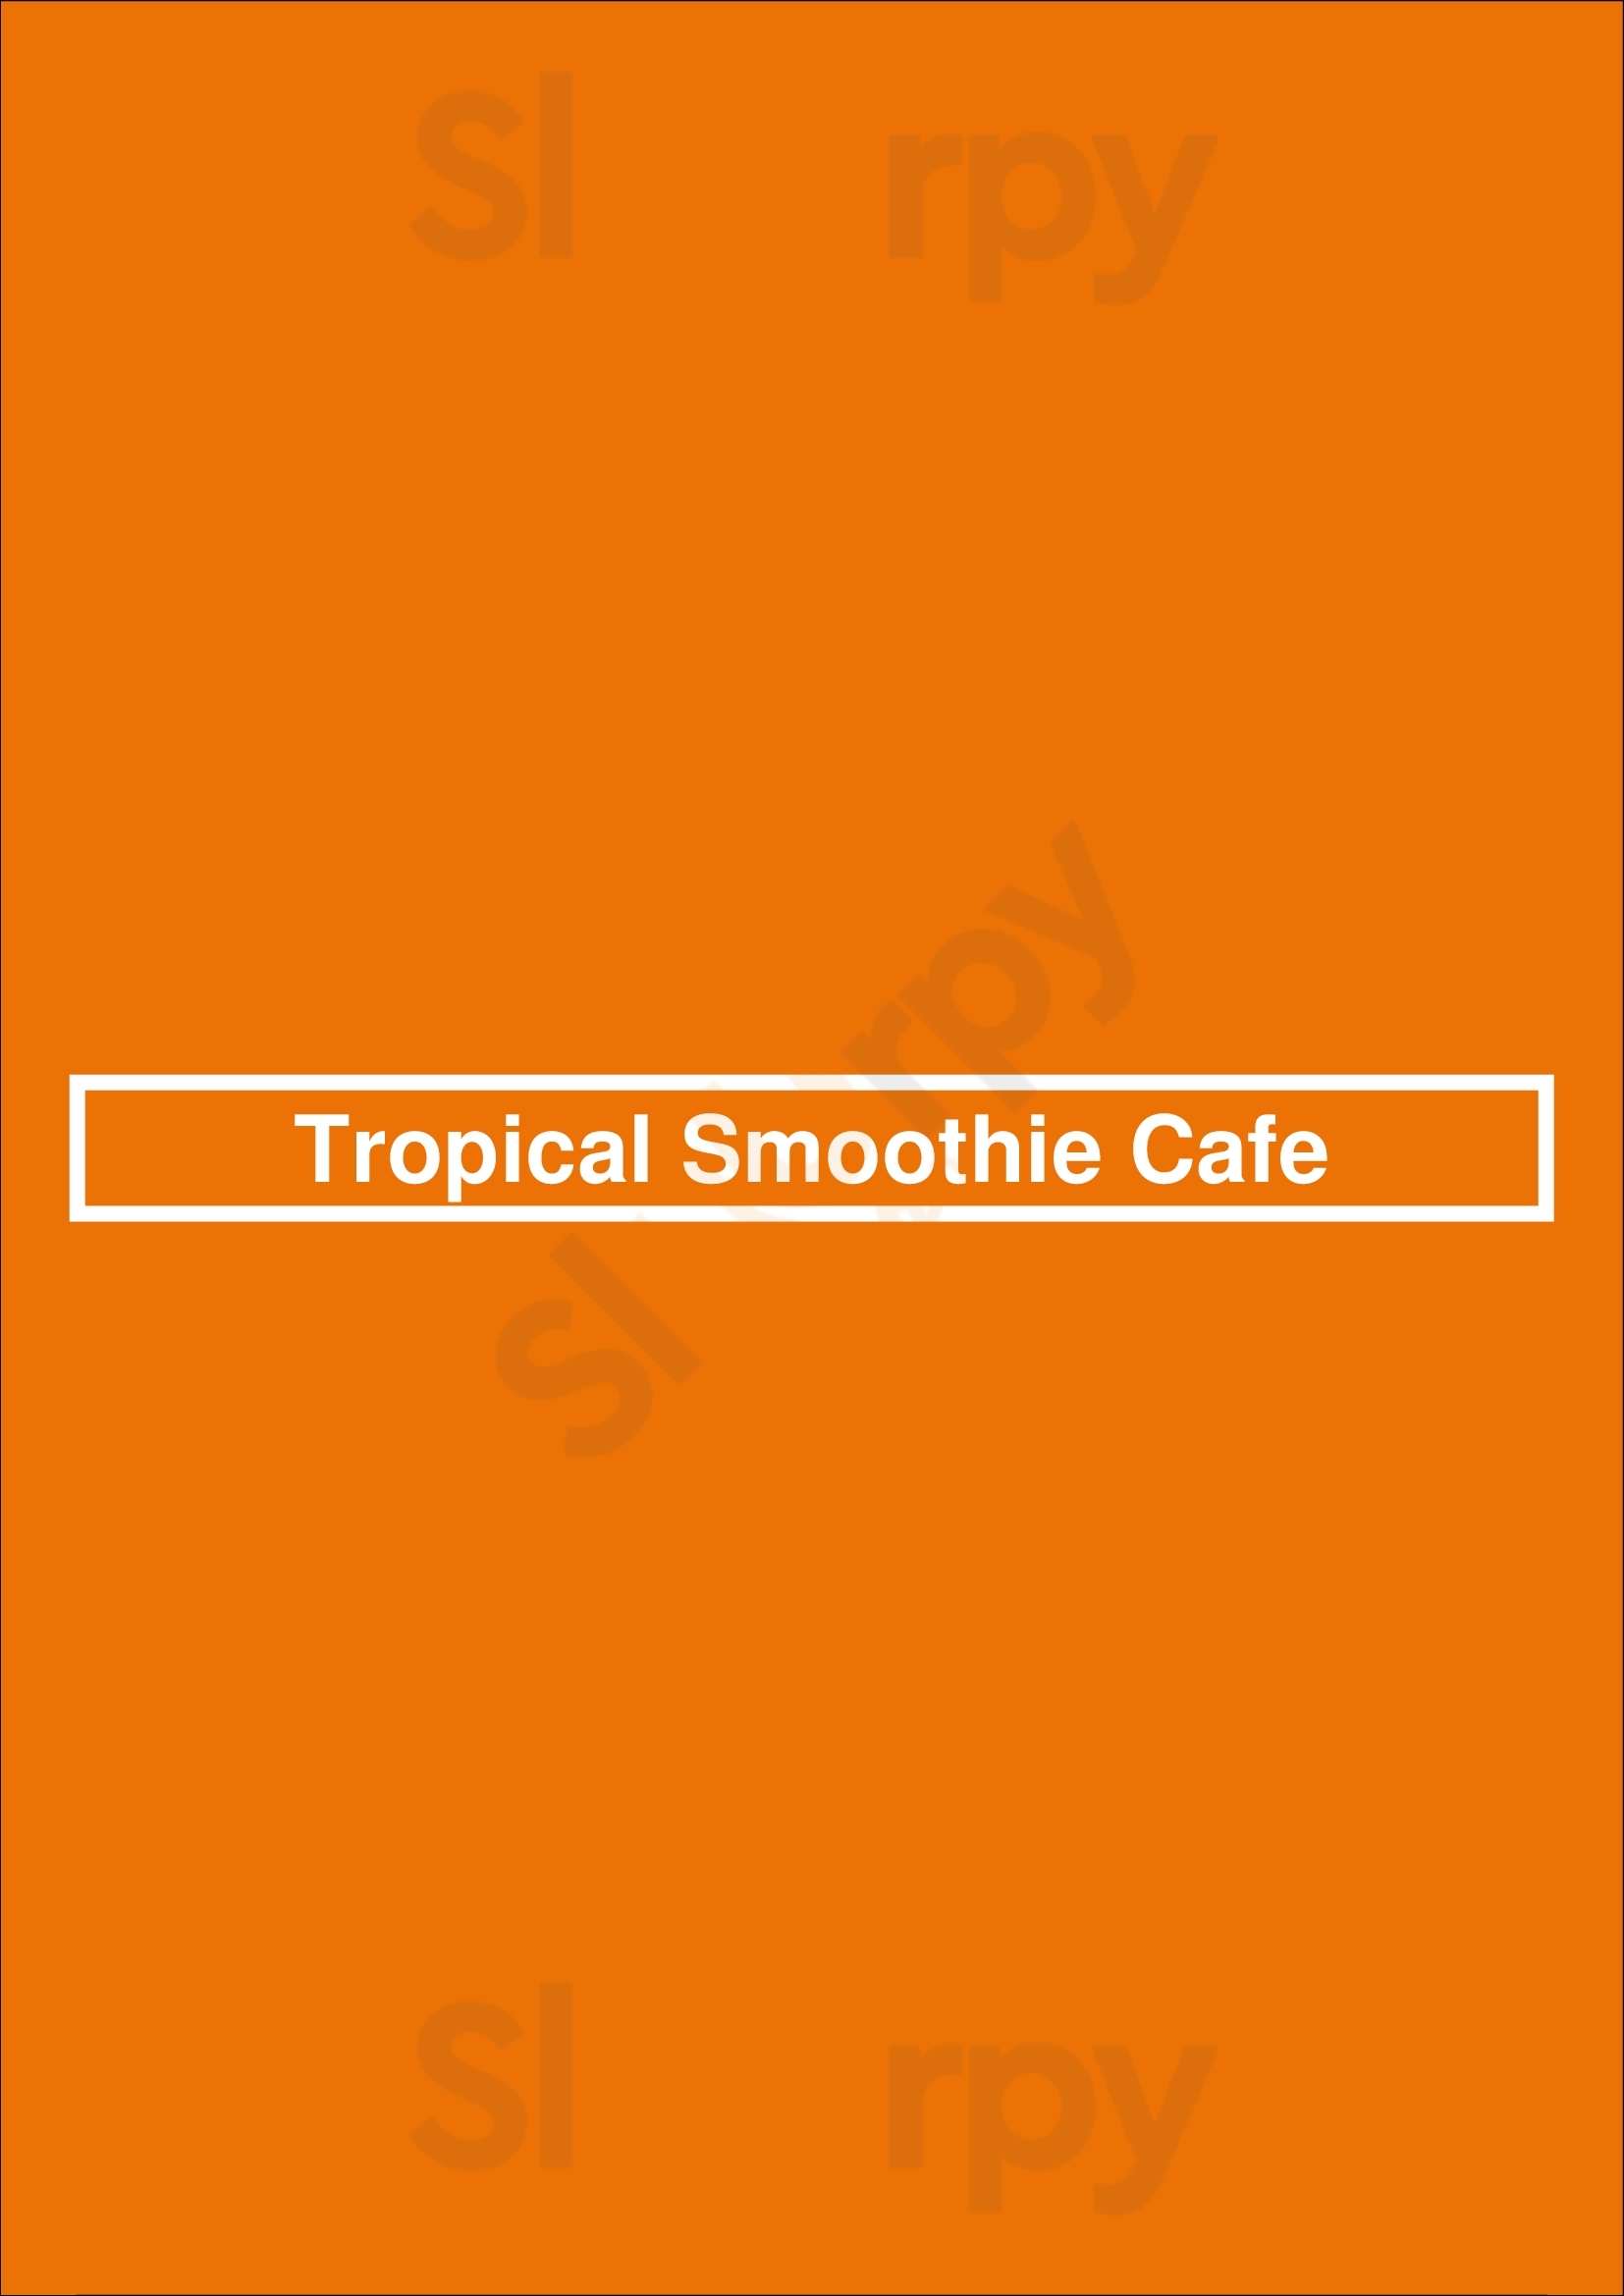 Tropical Smoothie Cafe Franklin Menu - 1